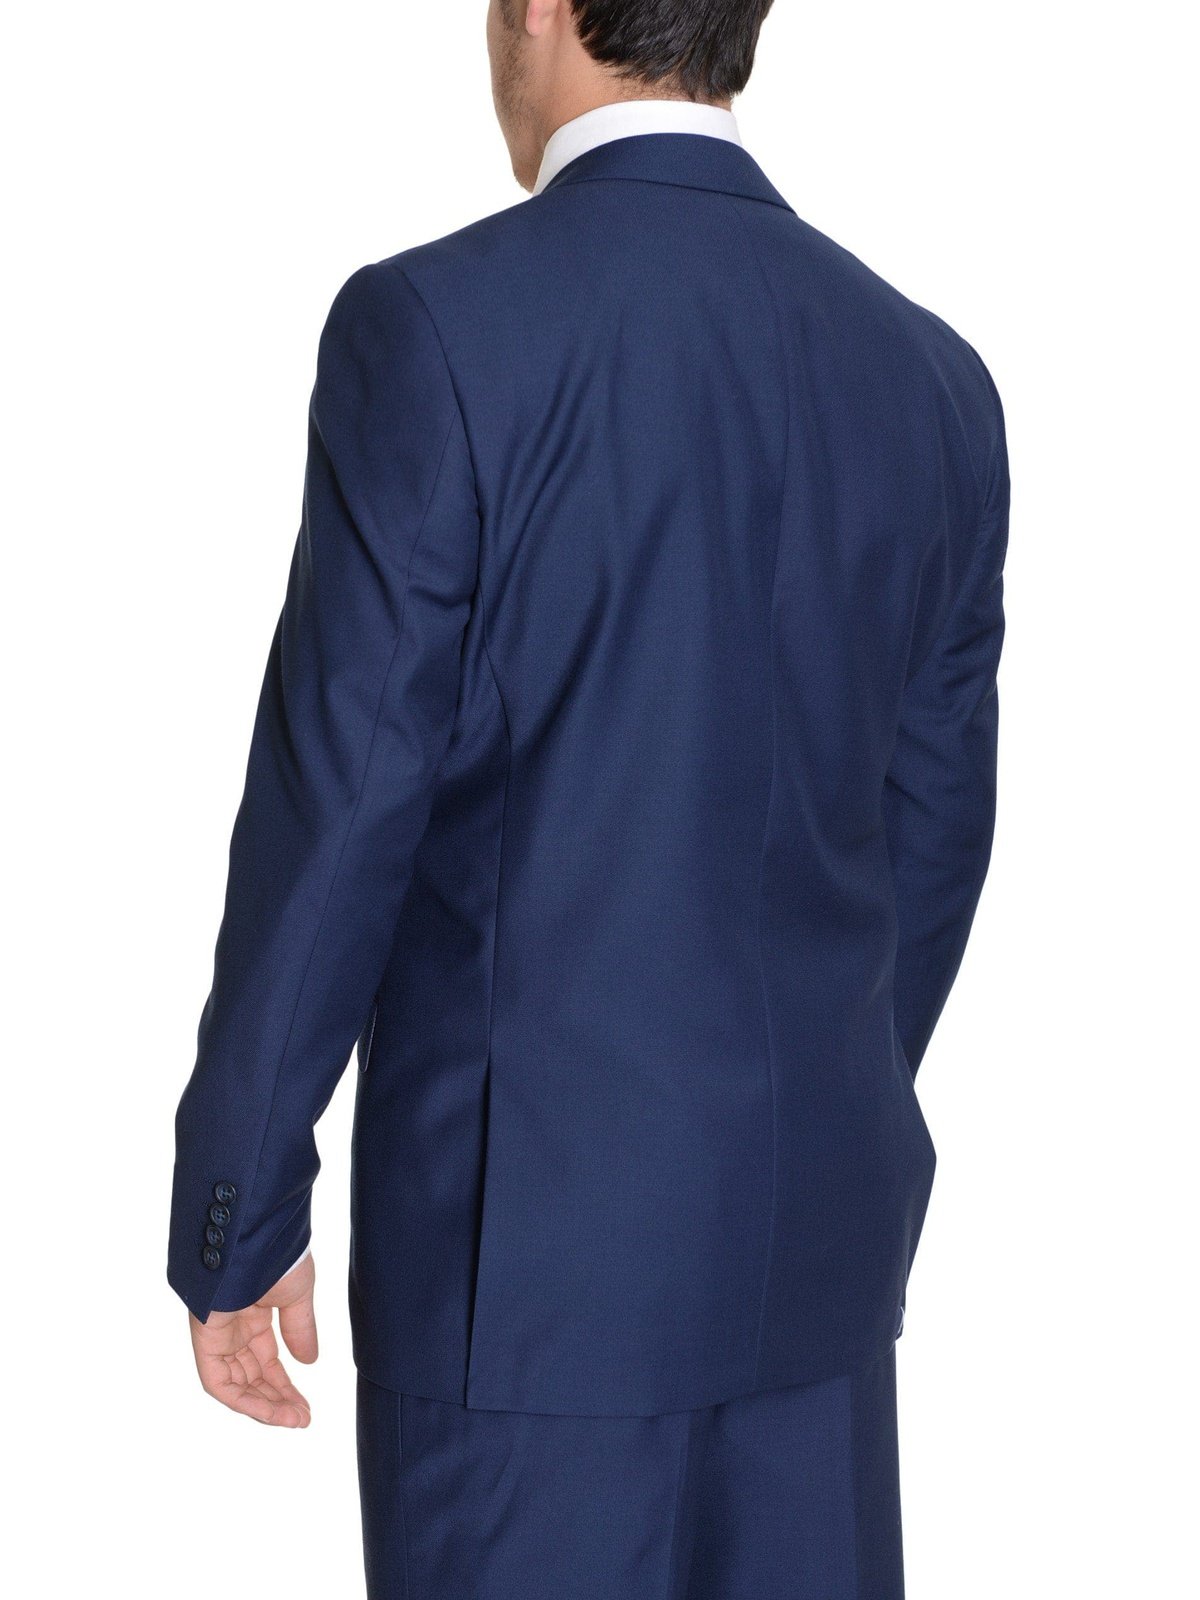 Raphael Sale Suits Raphael Regular Fit Solid Blue Two Button Suit